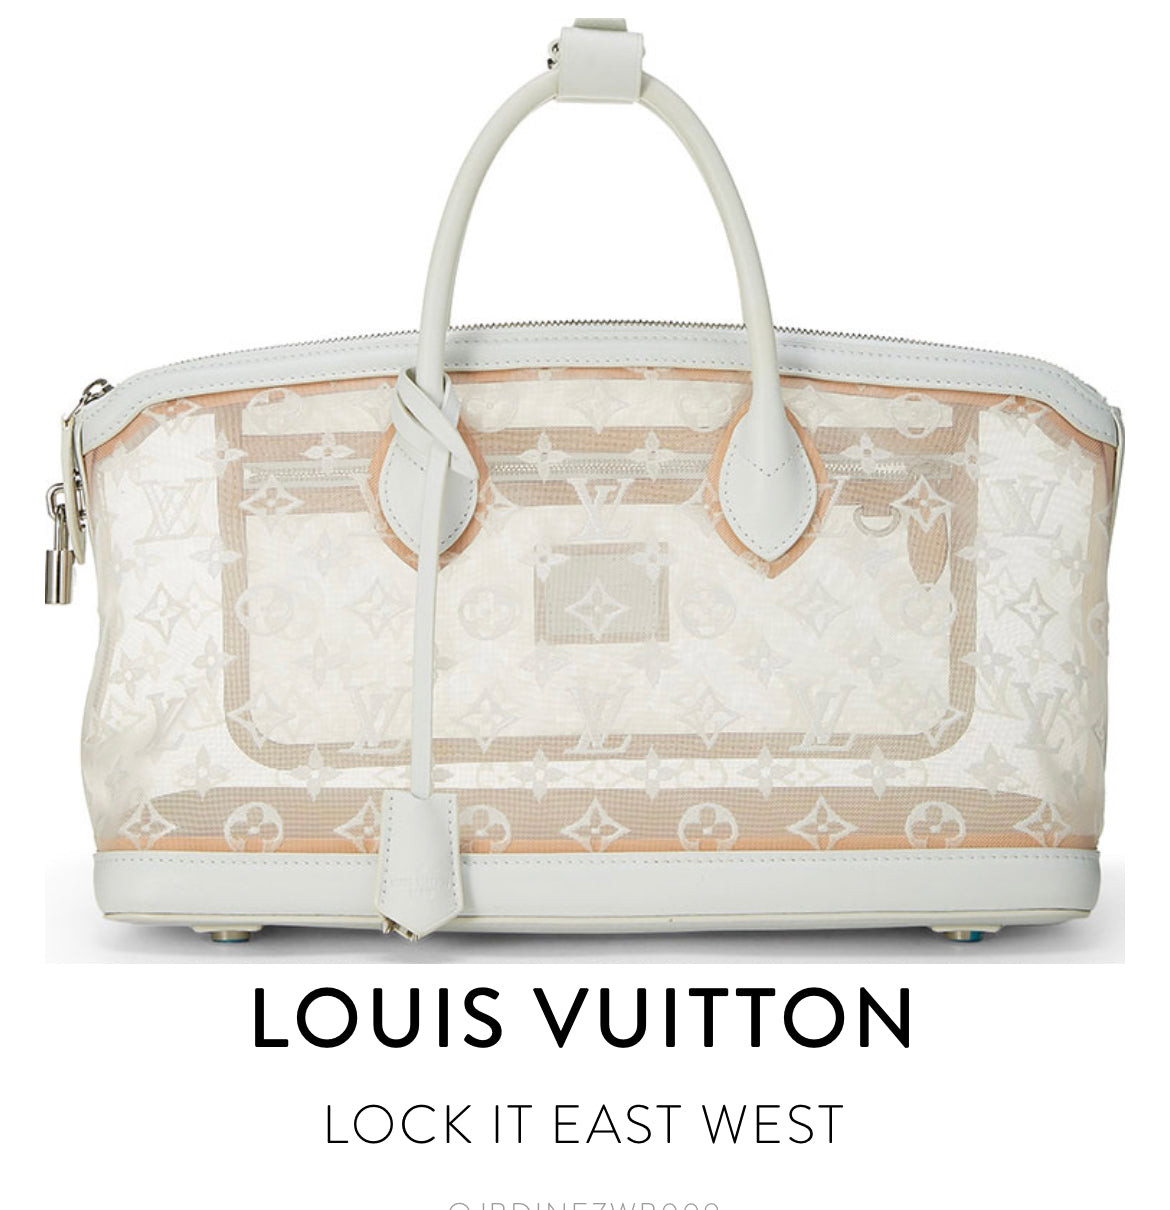 Louis Vuitton LockIt East West Translucent 2012 White (Marc Jacobs Designed)